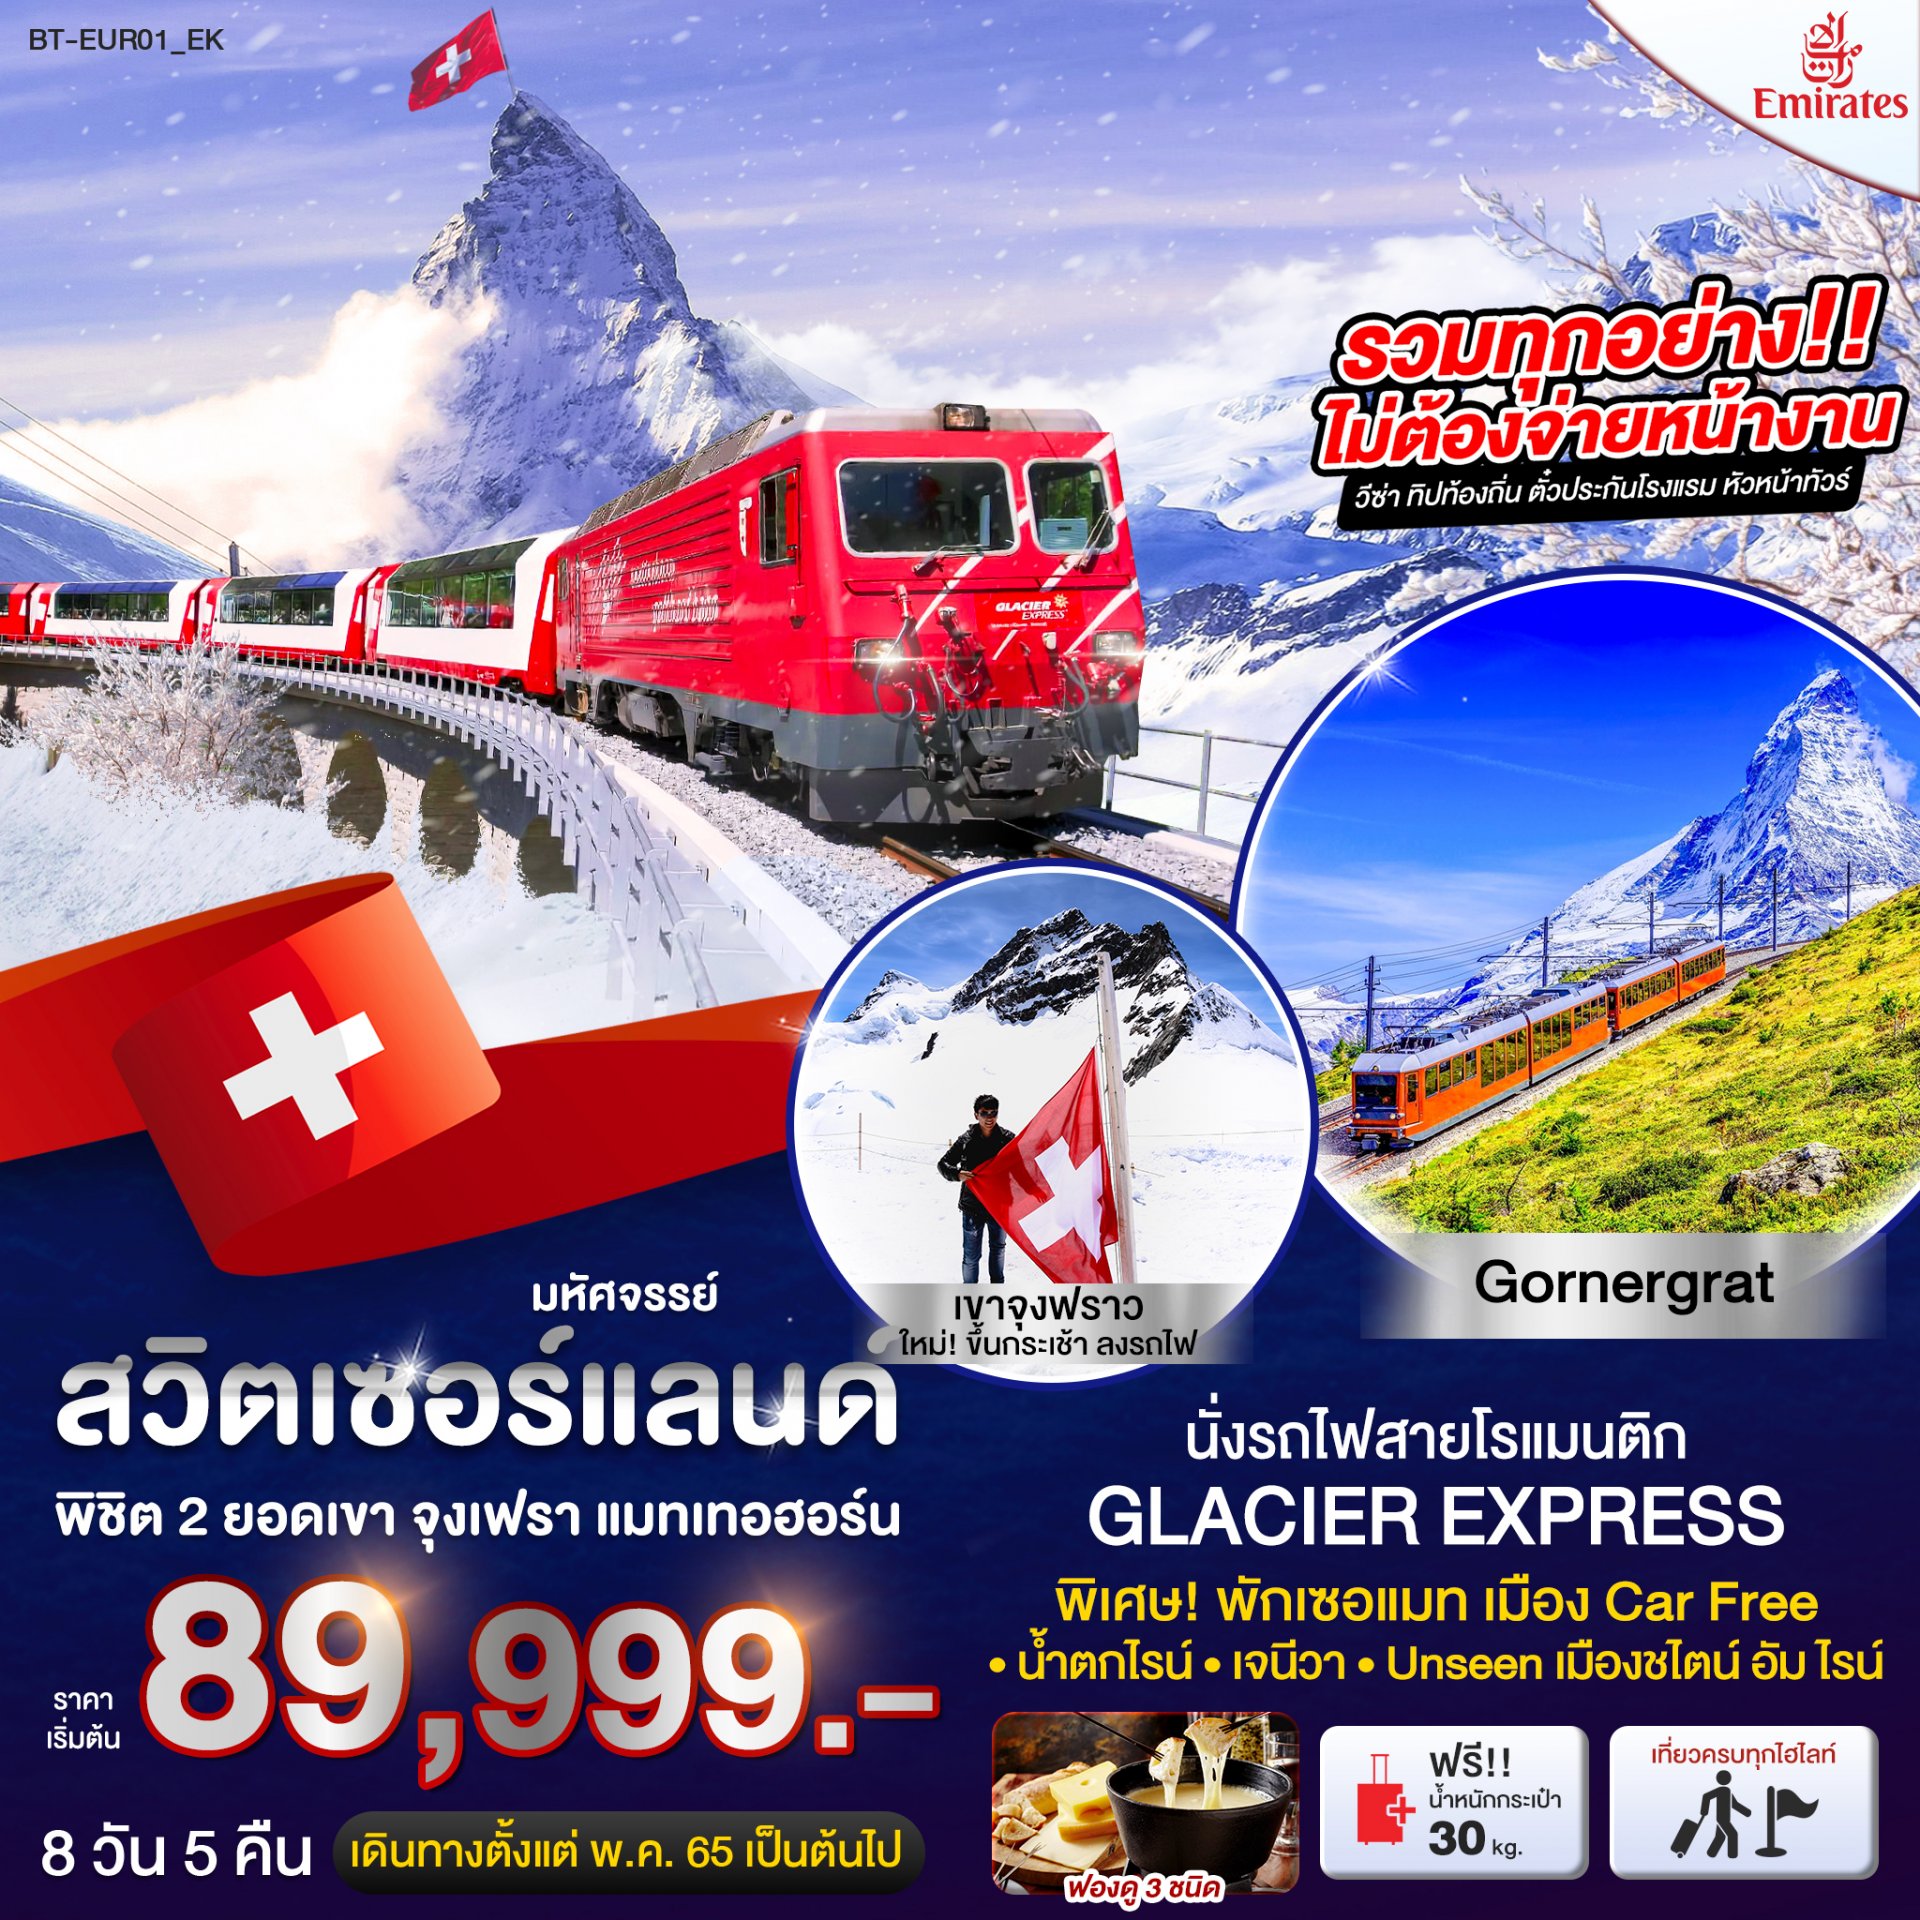 สวิสเซอร์แลนด์ นั่งรถไฟ Glacier Express พักเซอร์แมท 8วัน5คืน